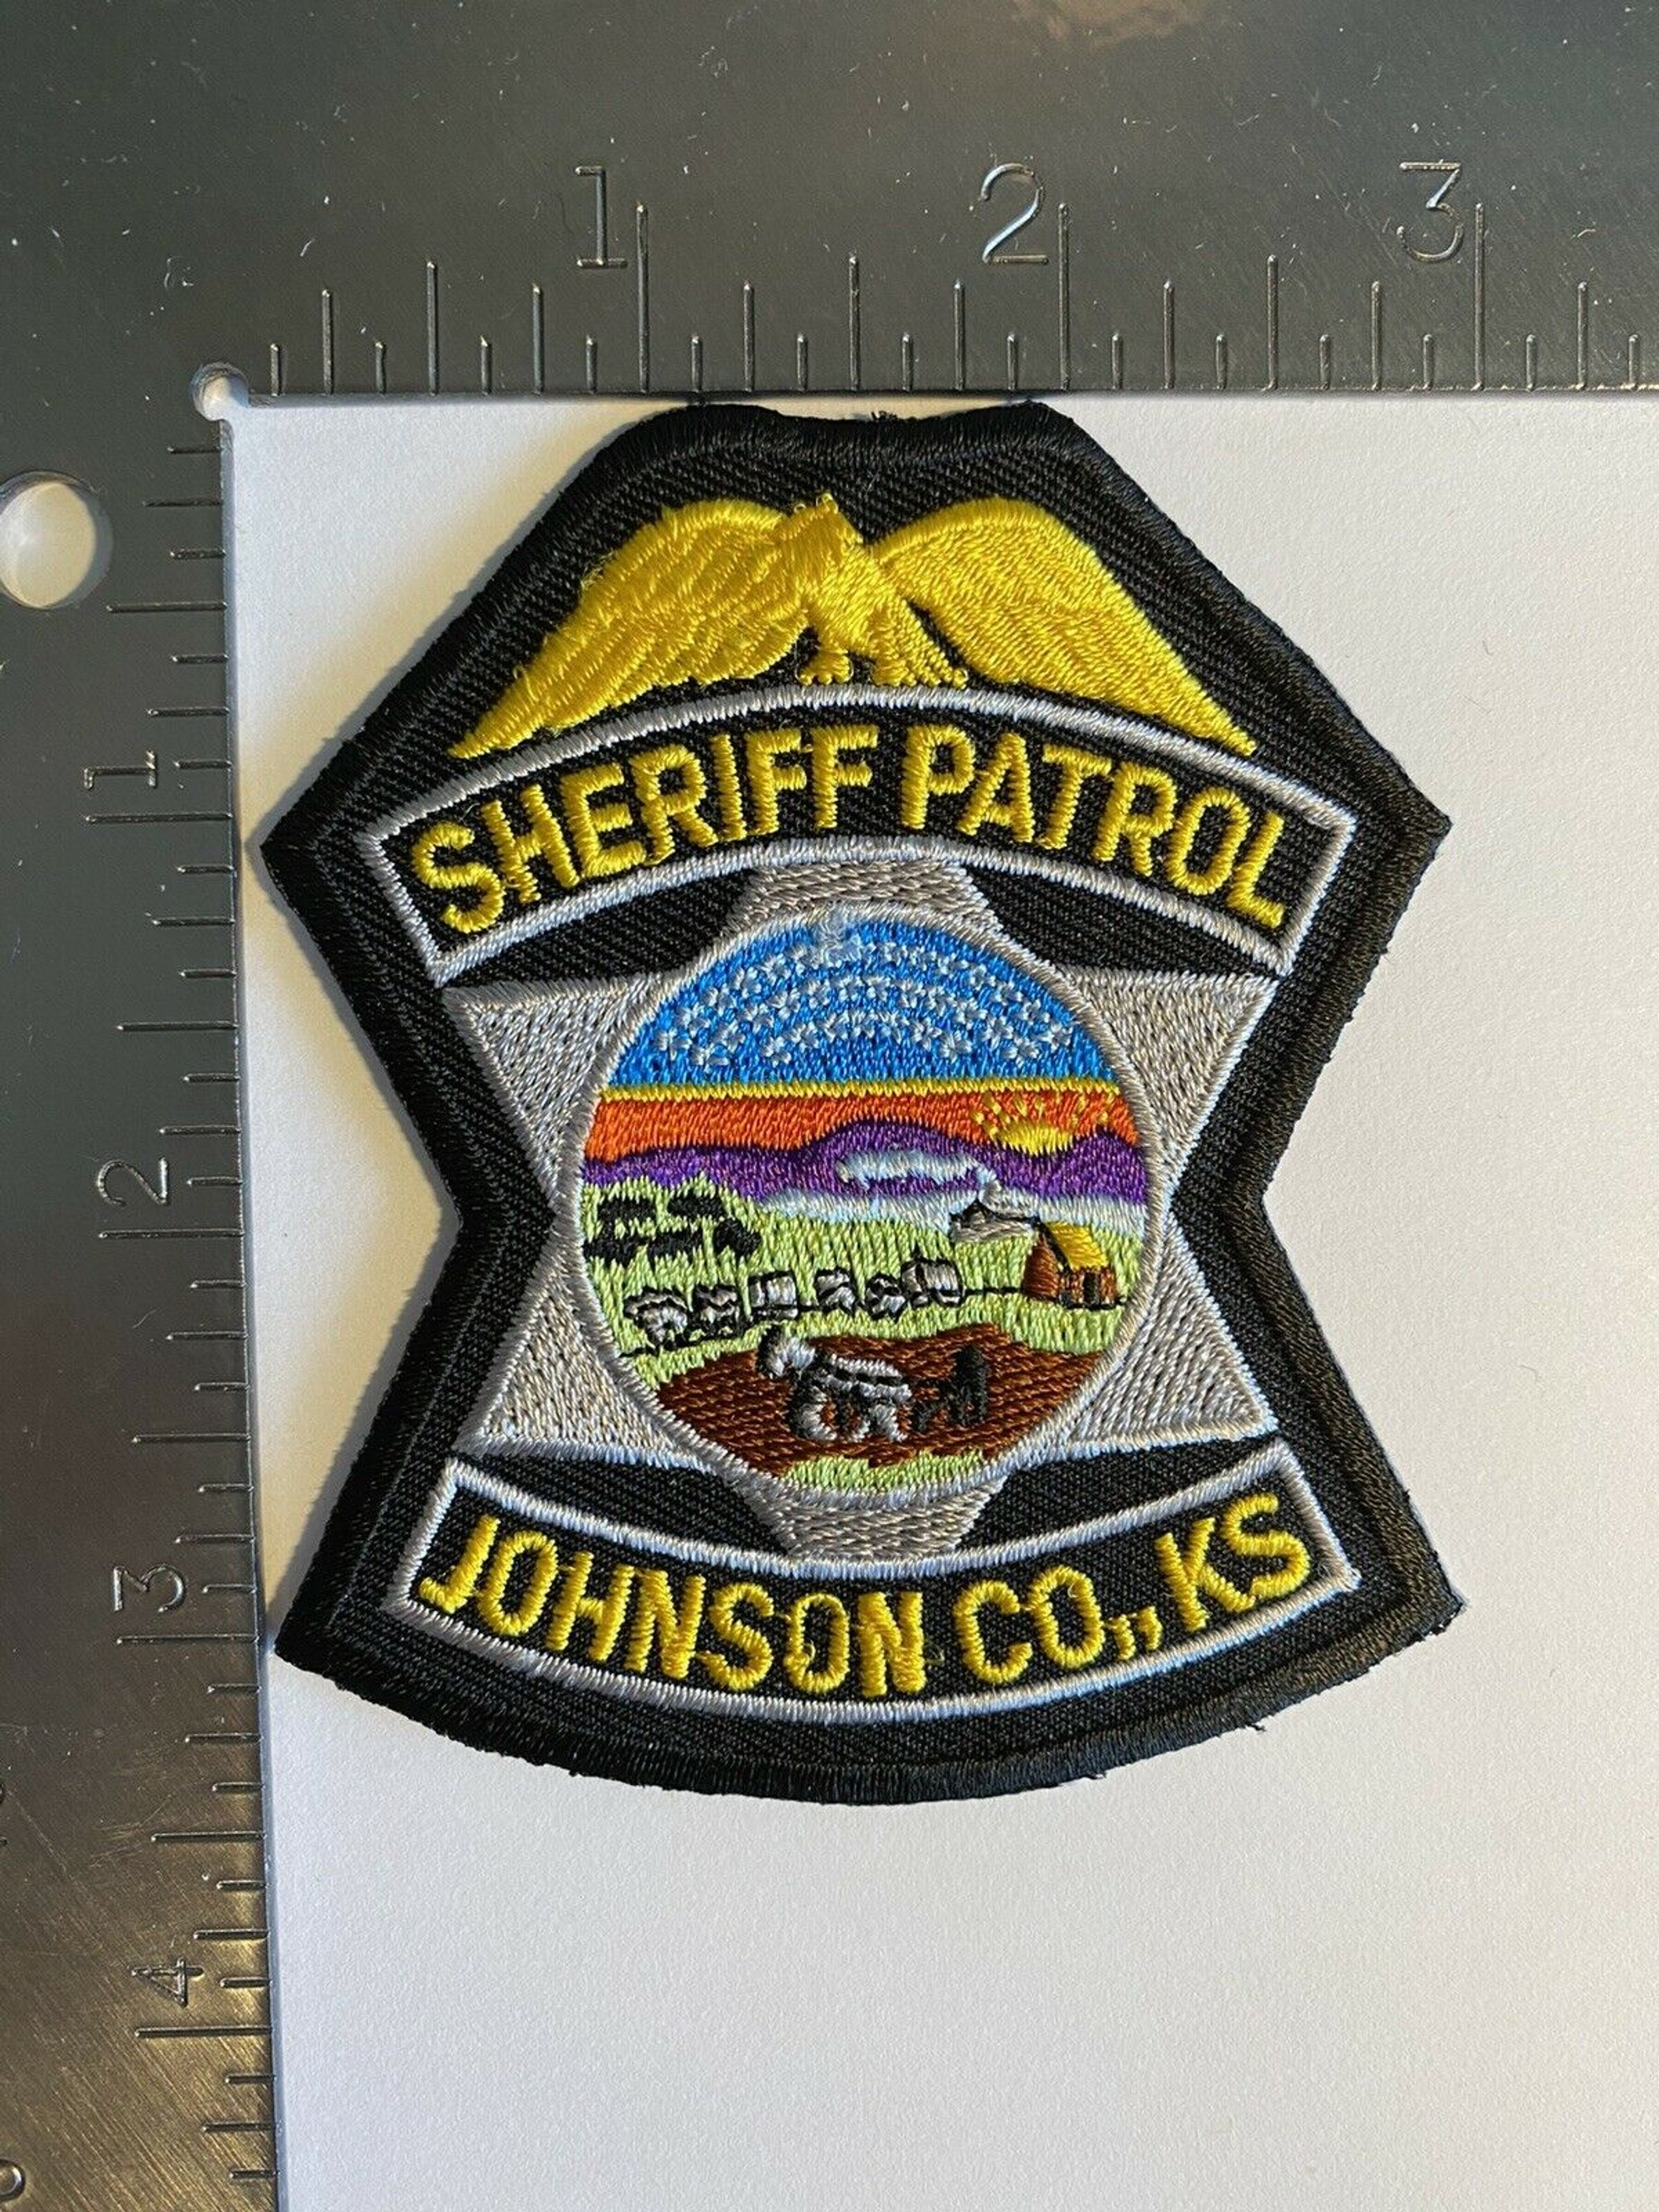 Johnson County KS Police Patch